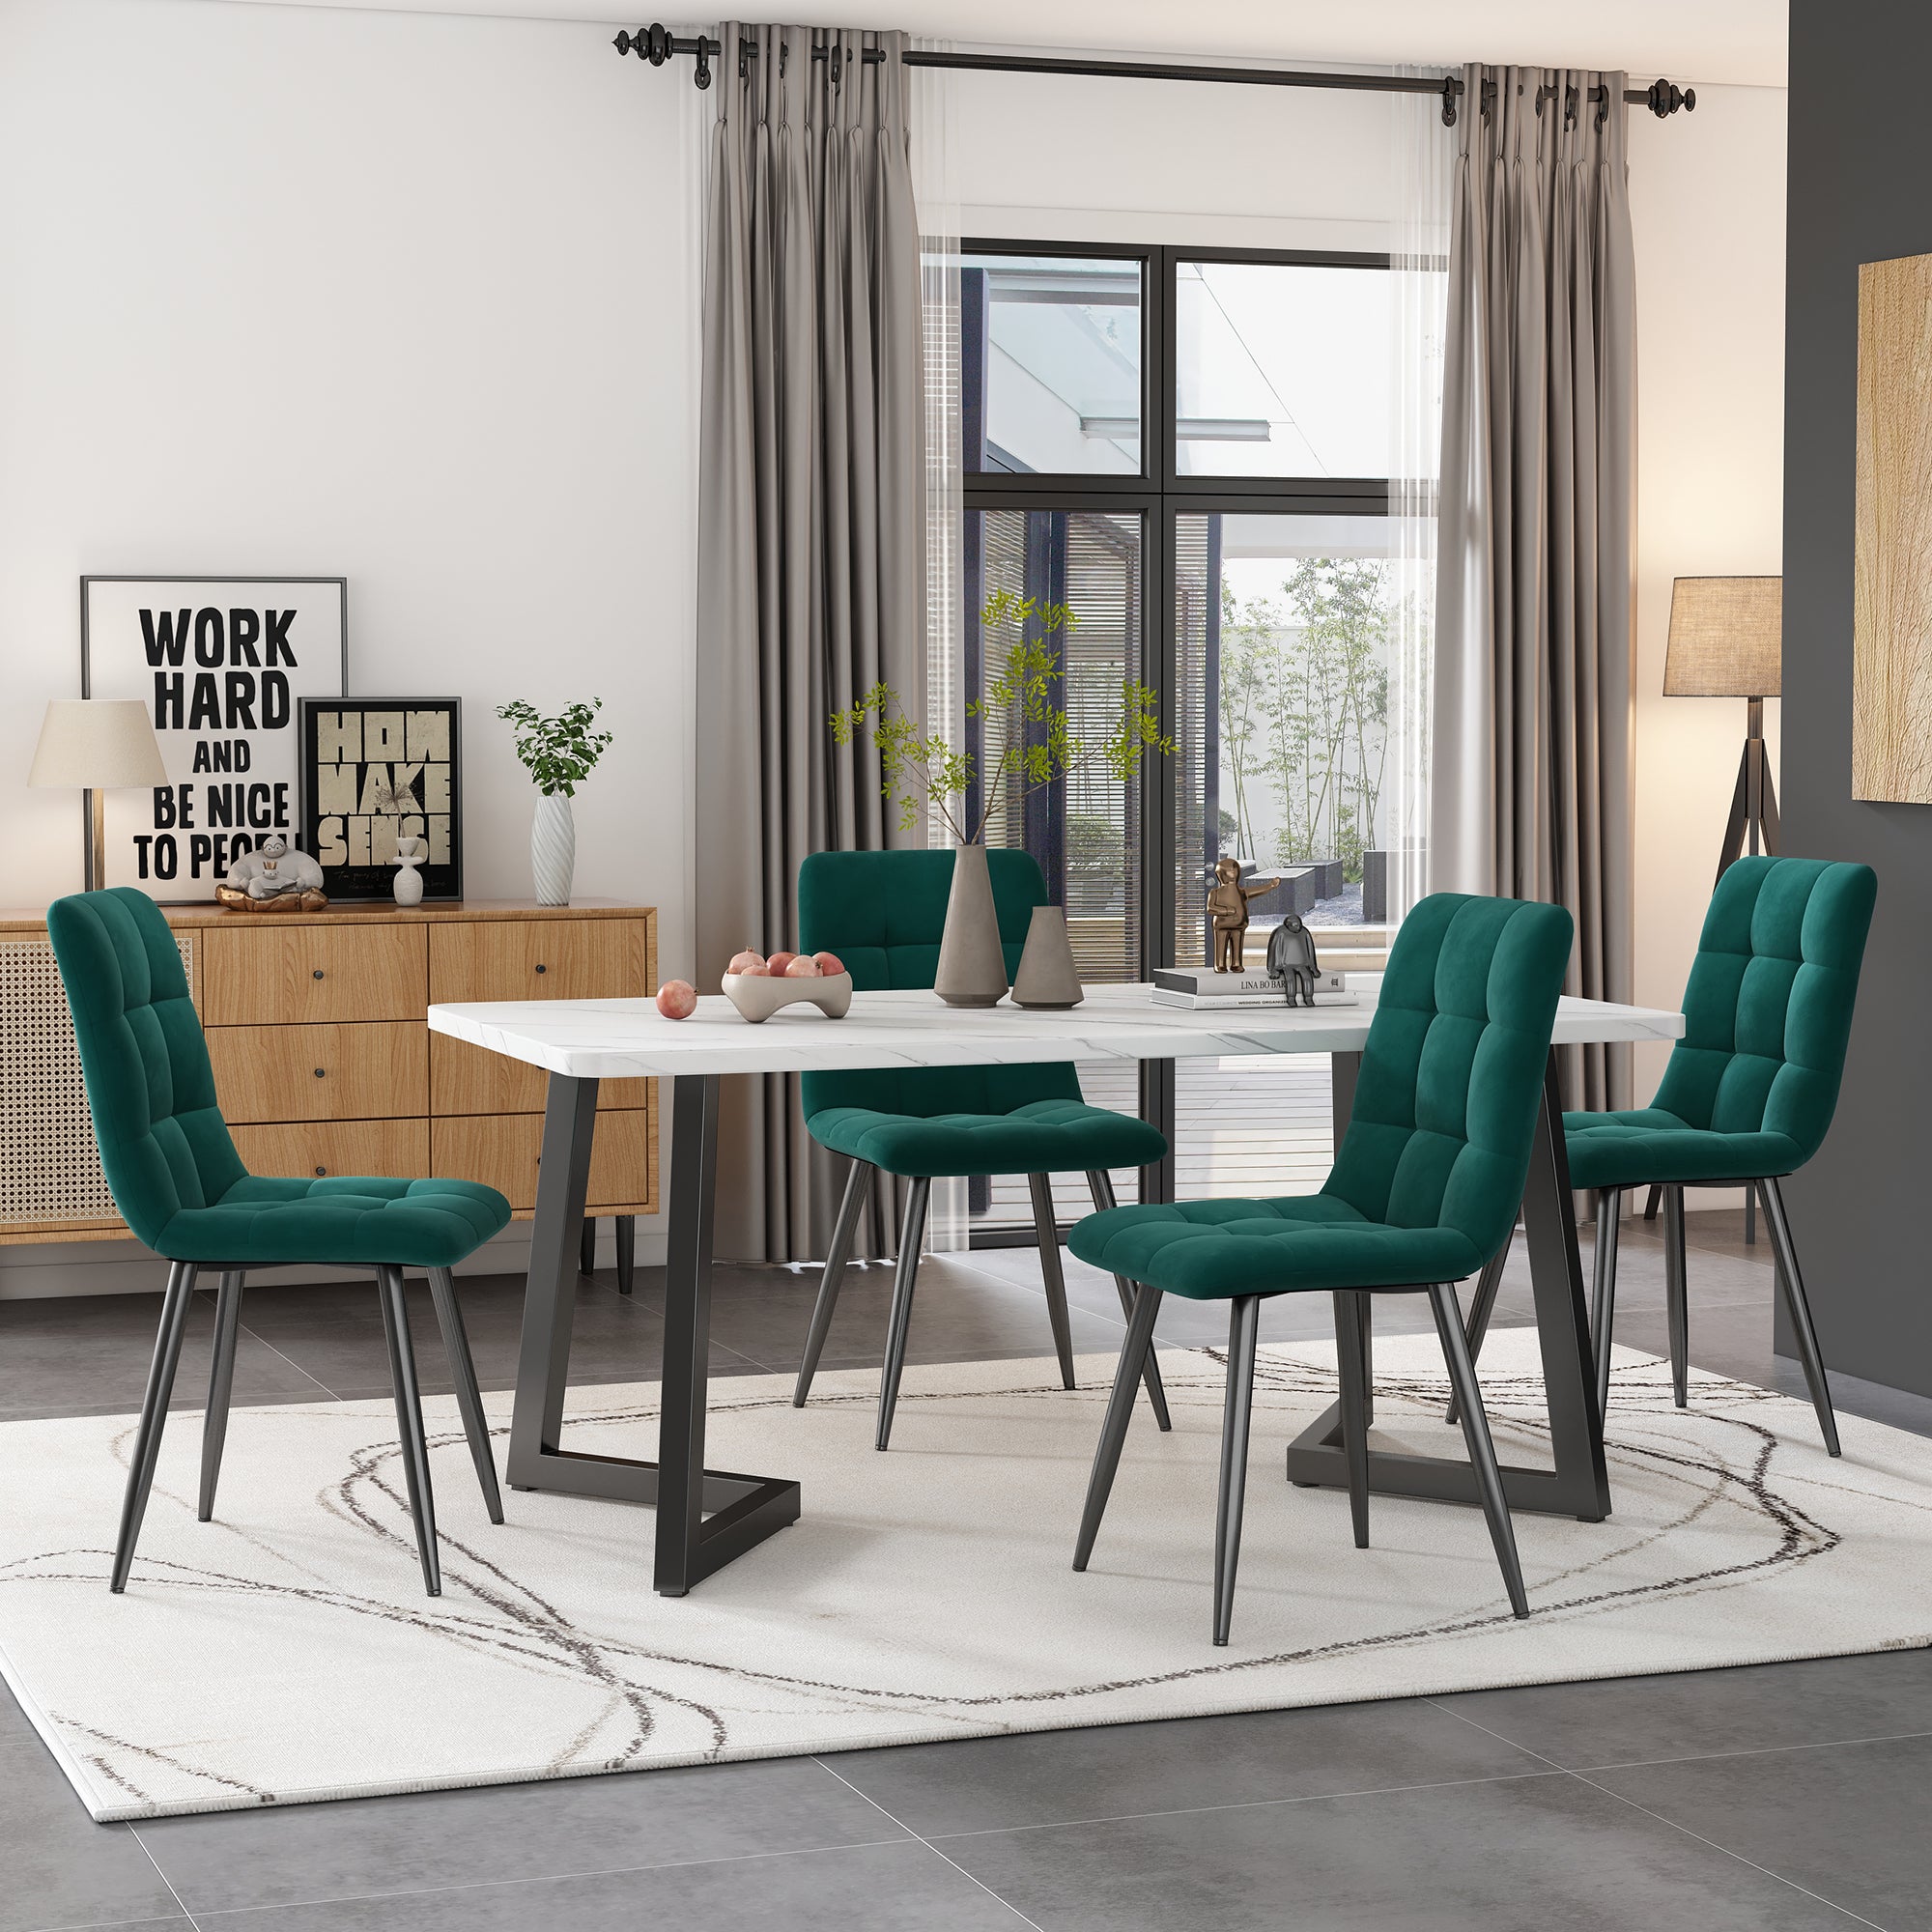 okwish Esstisch mit 4 Stühlen Set Rechteckiger Esstisch Moderner Küchentisch Set Esszimmerstuhl aus Samt Küchenstuhl 117cm, Grün